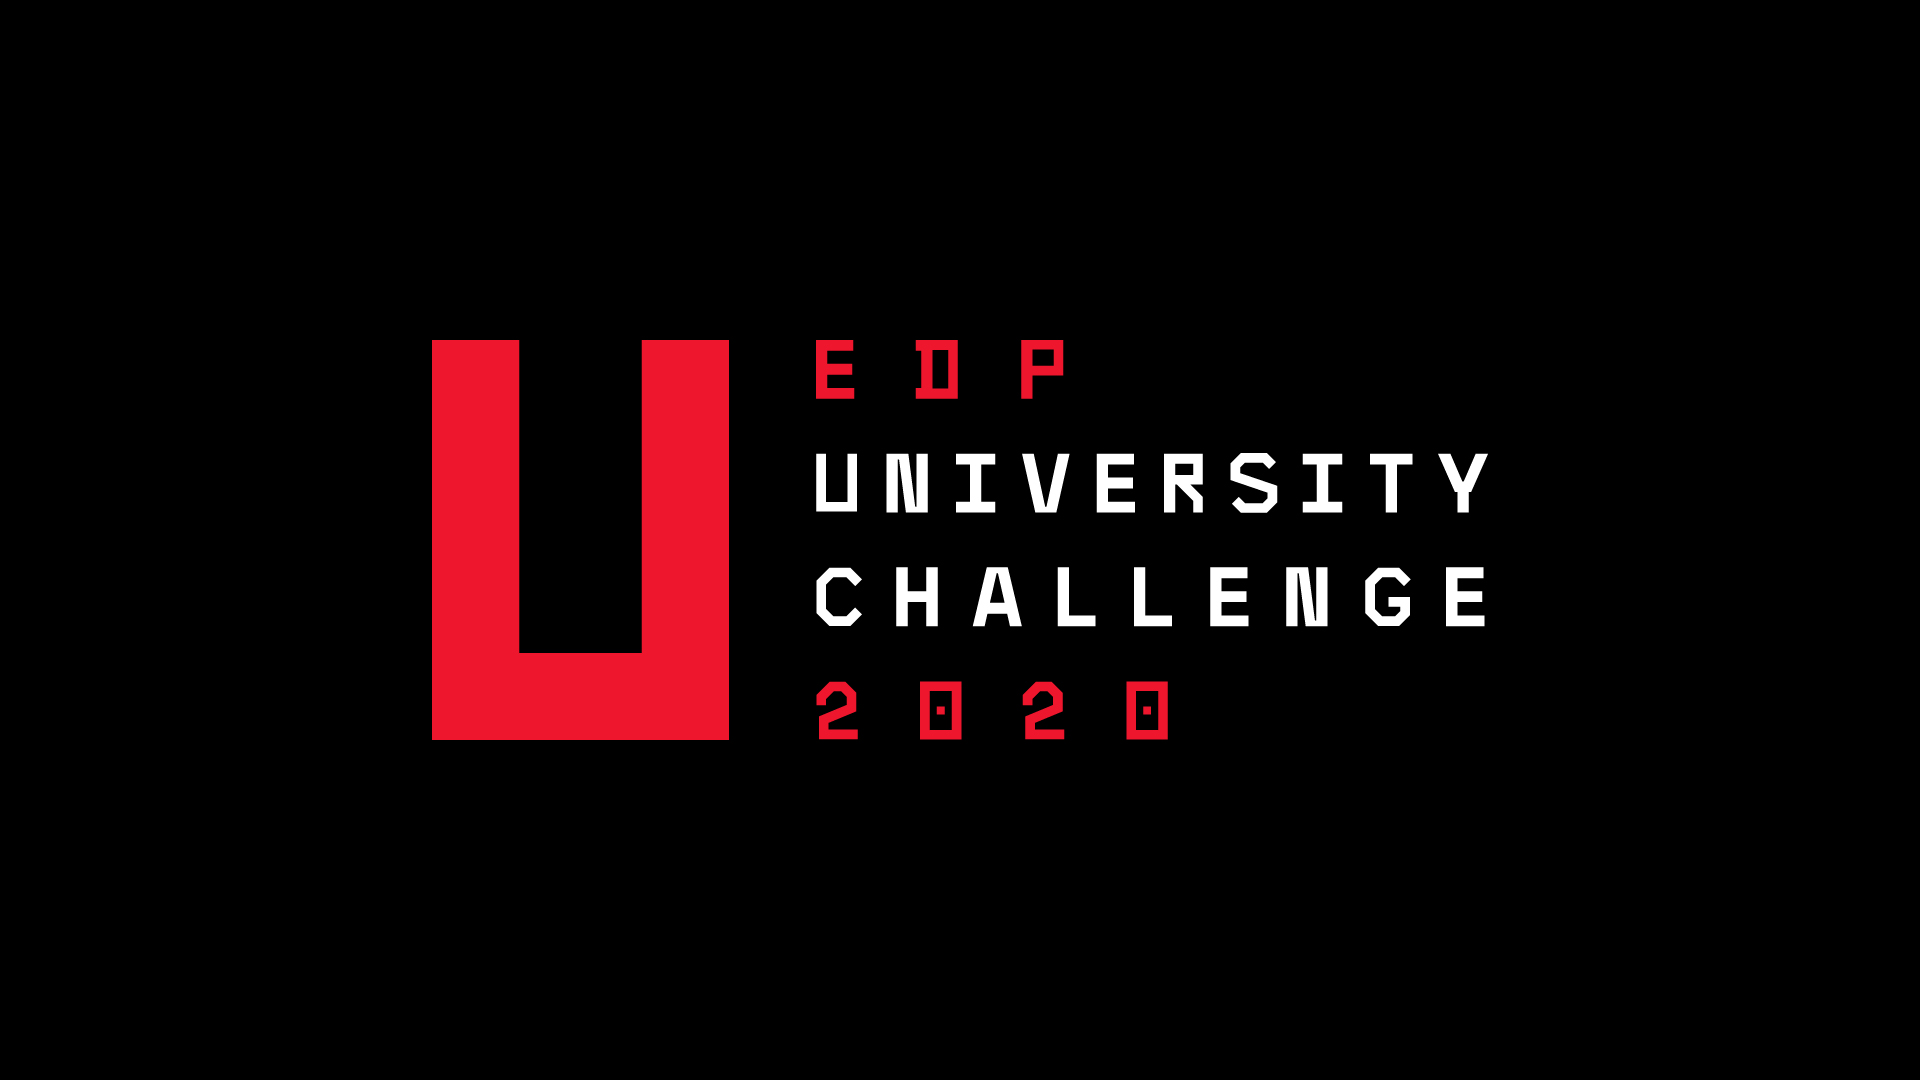 EDP University Challenge